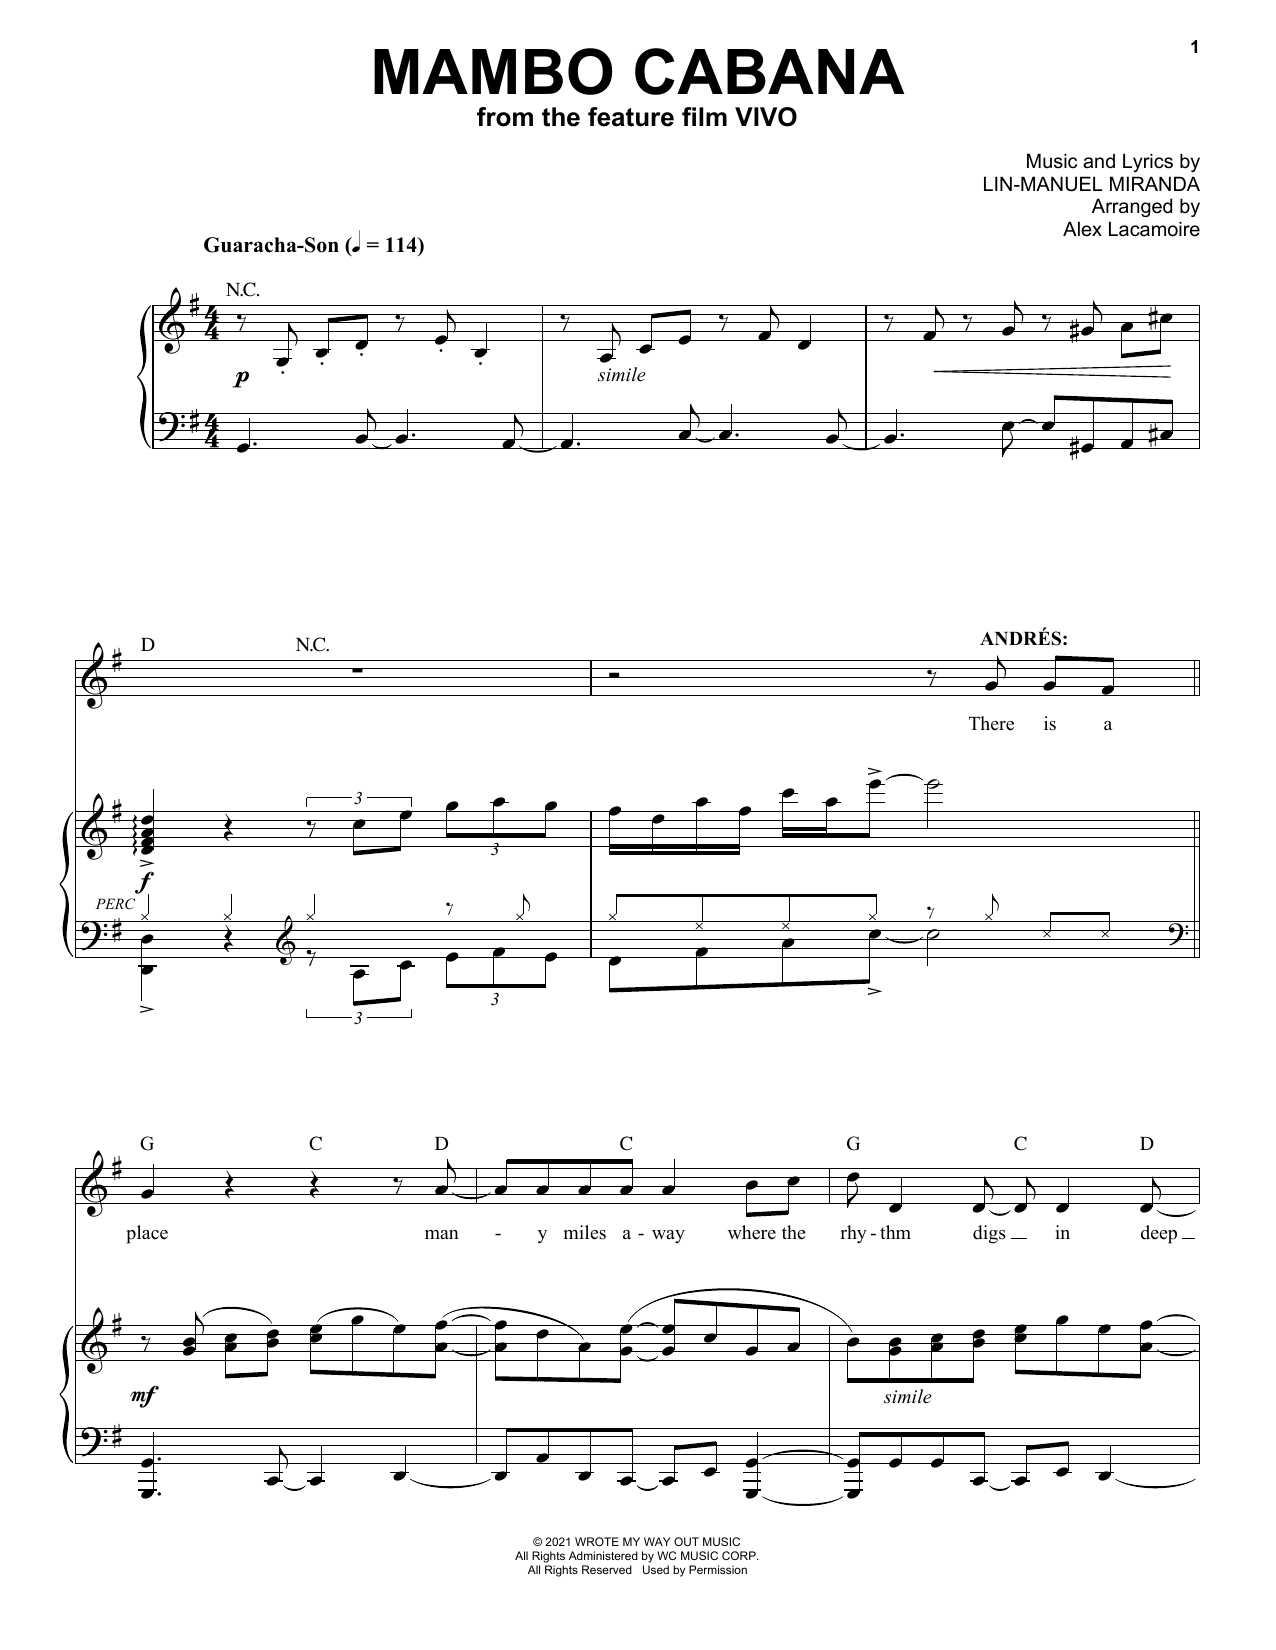 Lin-Manuel Miranda Mambo Cabana (from Vivo) Sheet Music Notes & Chords for Piano & Vocal - Download or Print PDF